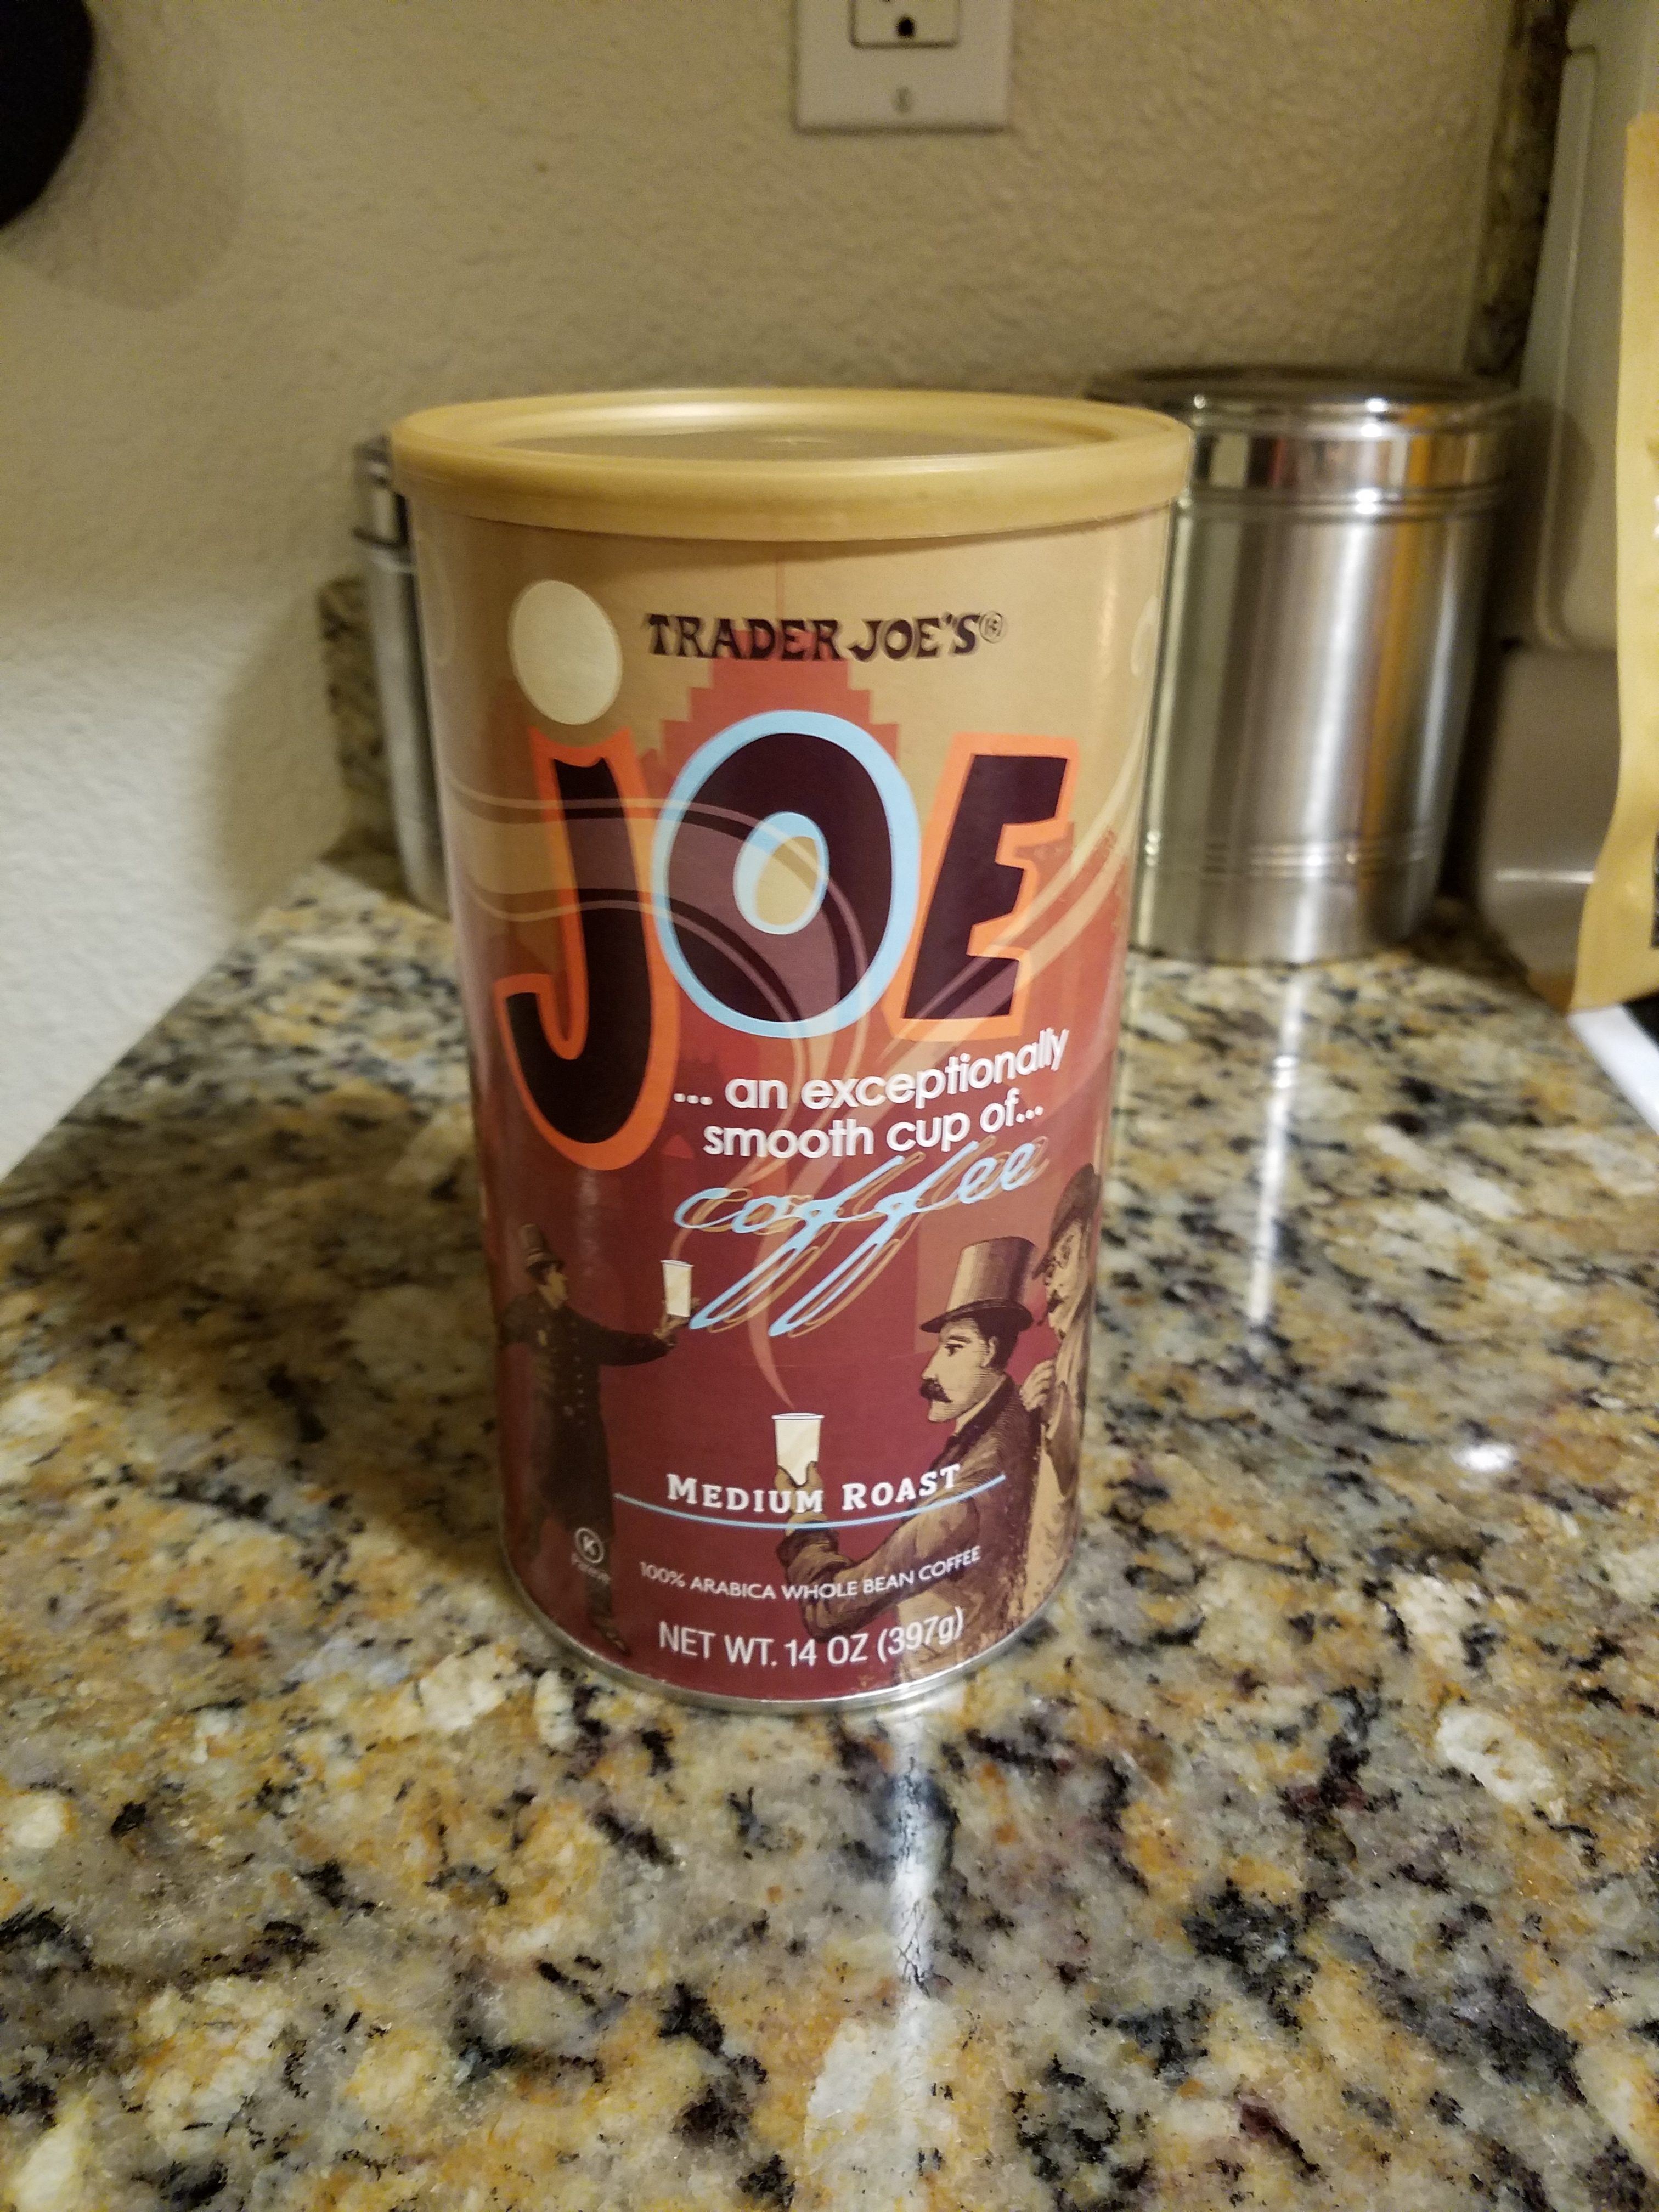 Everythingjoes.com | Trader Joe's Joe Brand Medium Roast Coffee Review